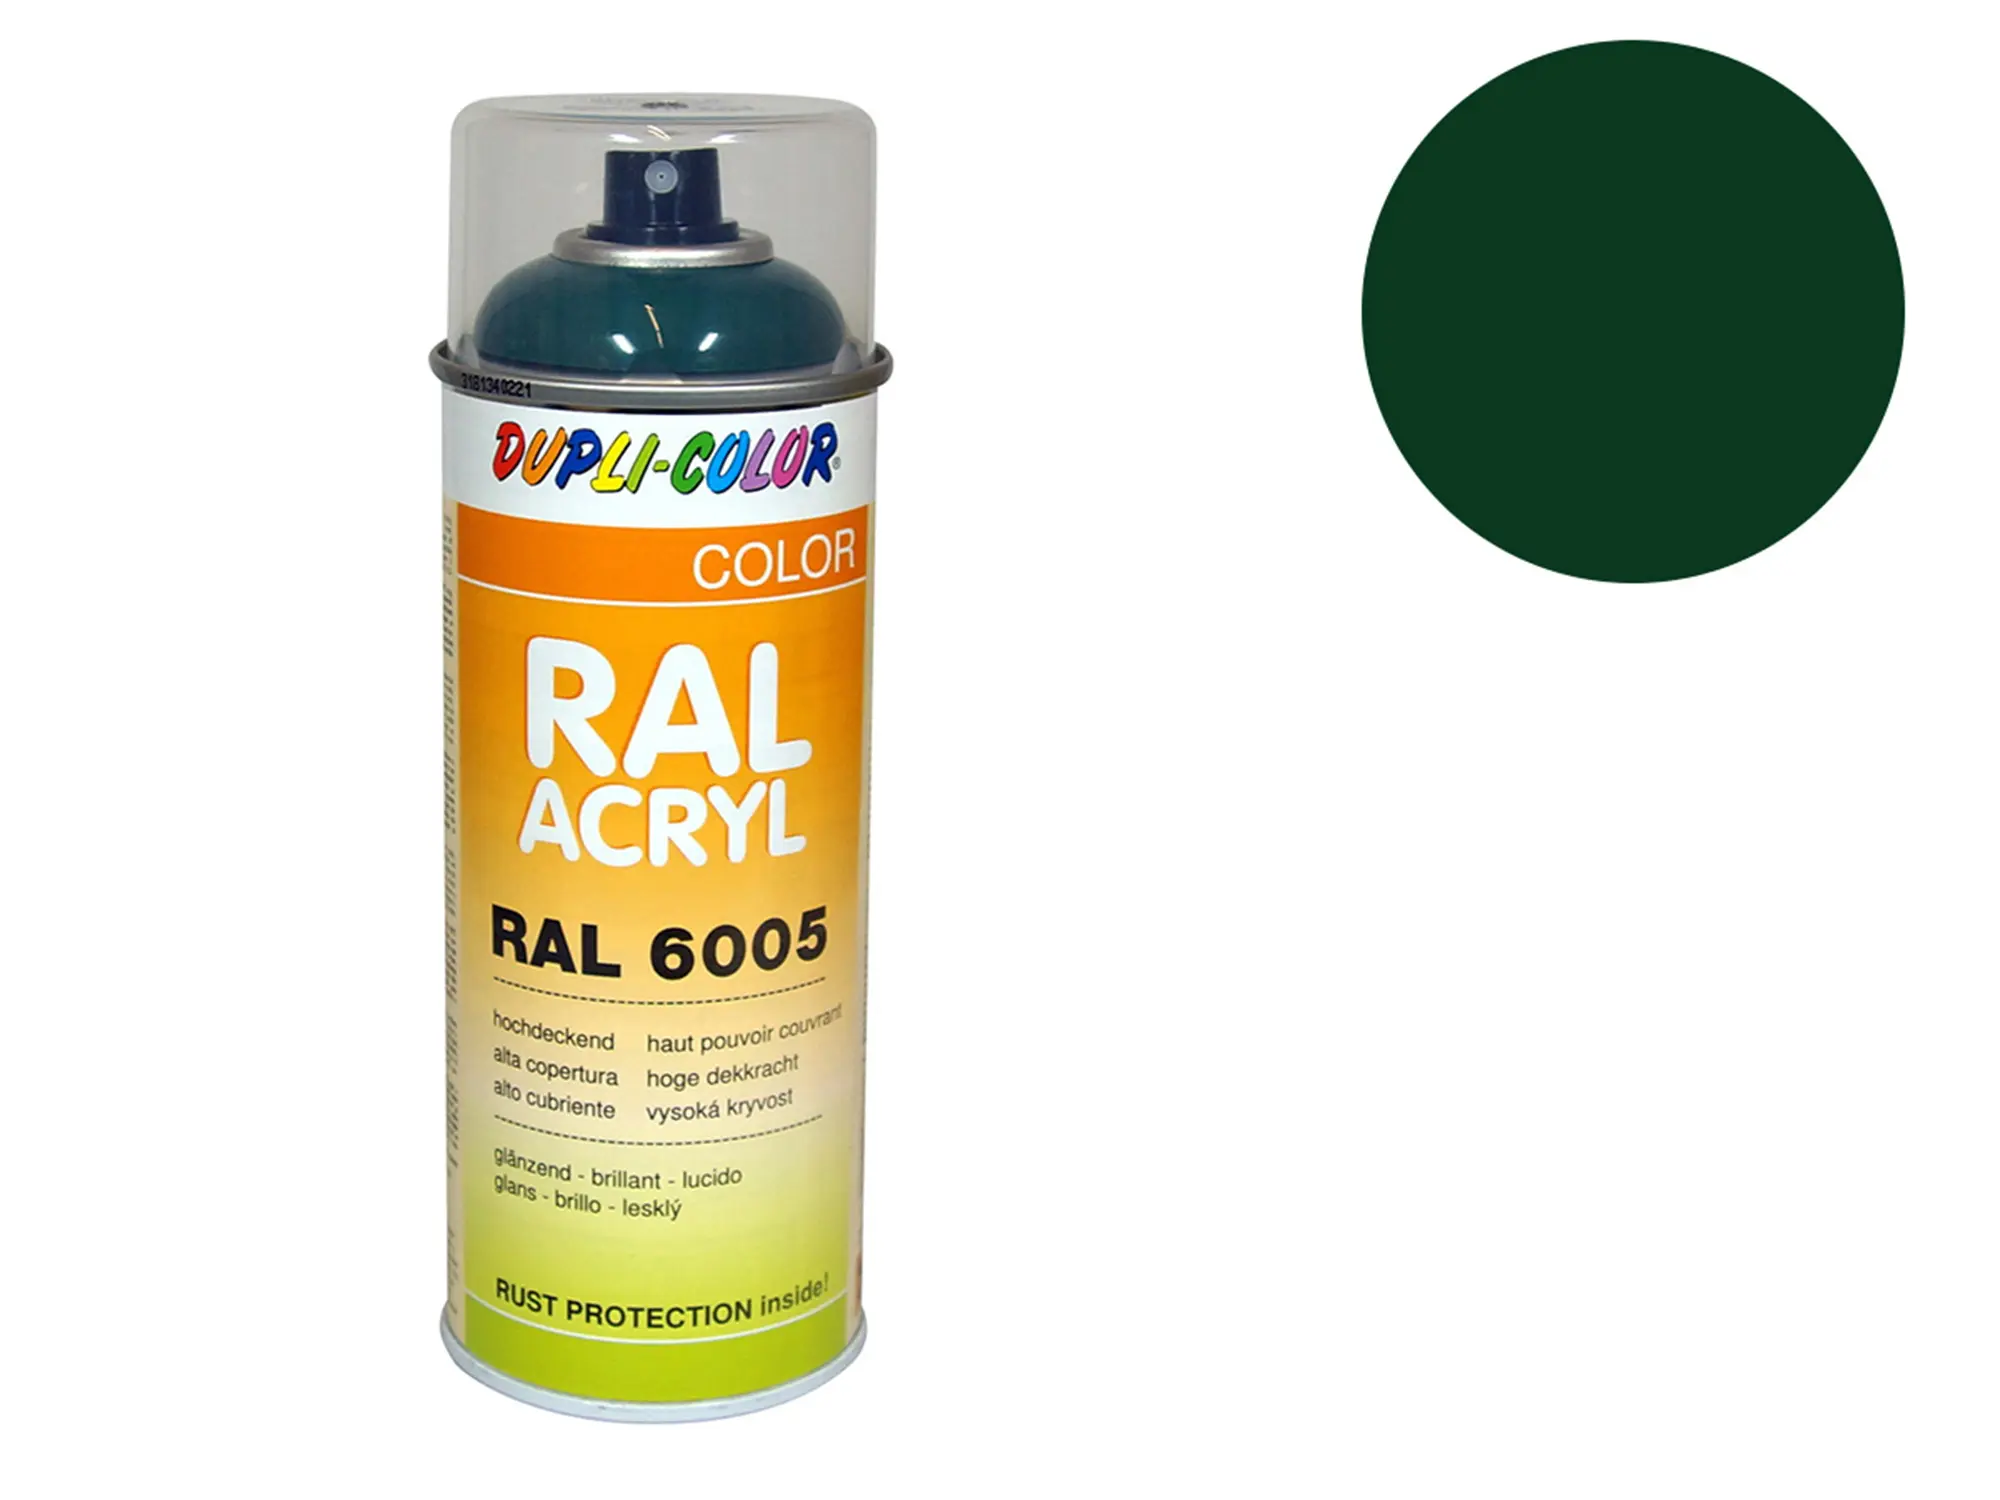 Dupli-Color Acryl-Spray RAL 6005 moosgrün, glänzend - 400 ml, Art.-Nr.: 10064813 - Bild 1